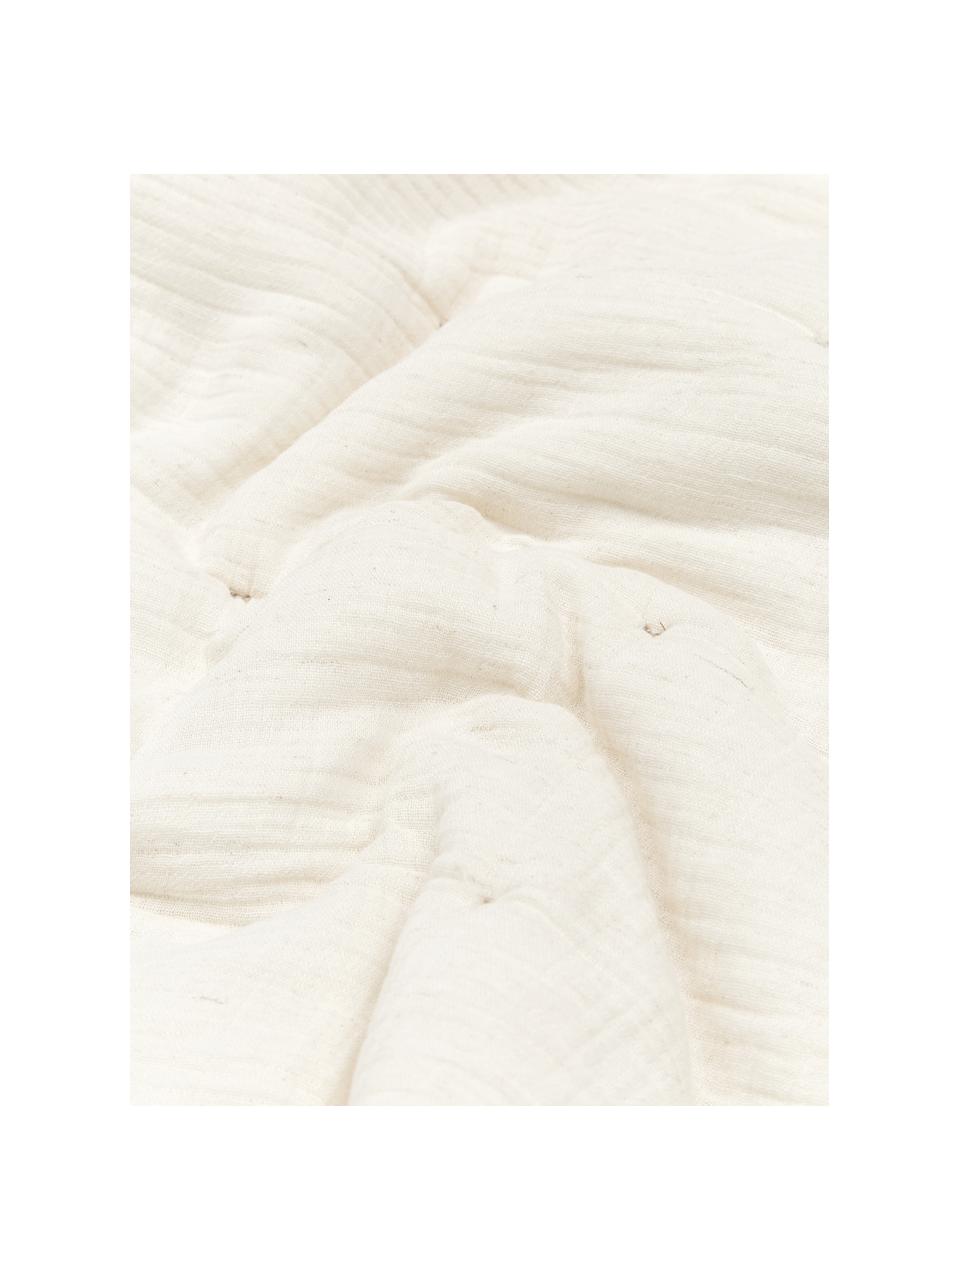 Wattierte Tagesdecke Lune aus Baumwollmusselin in Beige, Bezug: 100% Baumwolle, Beige, B 180 x L 250 cm (für Betten bis 140 x 200 cm)